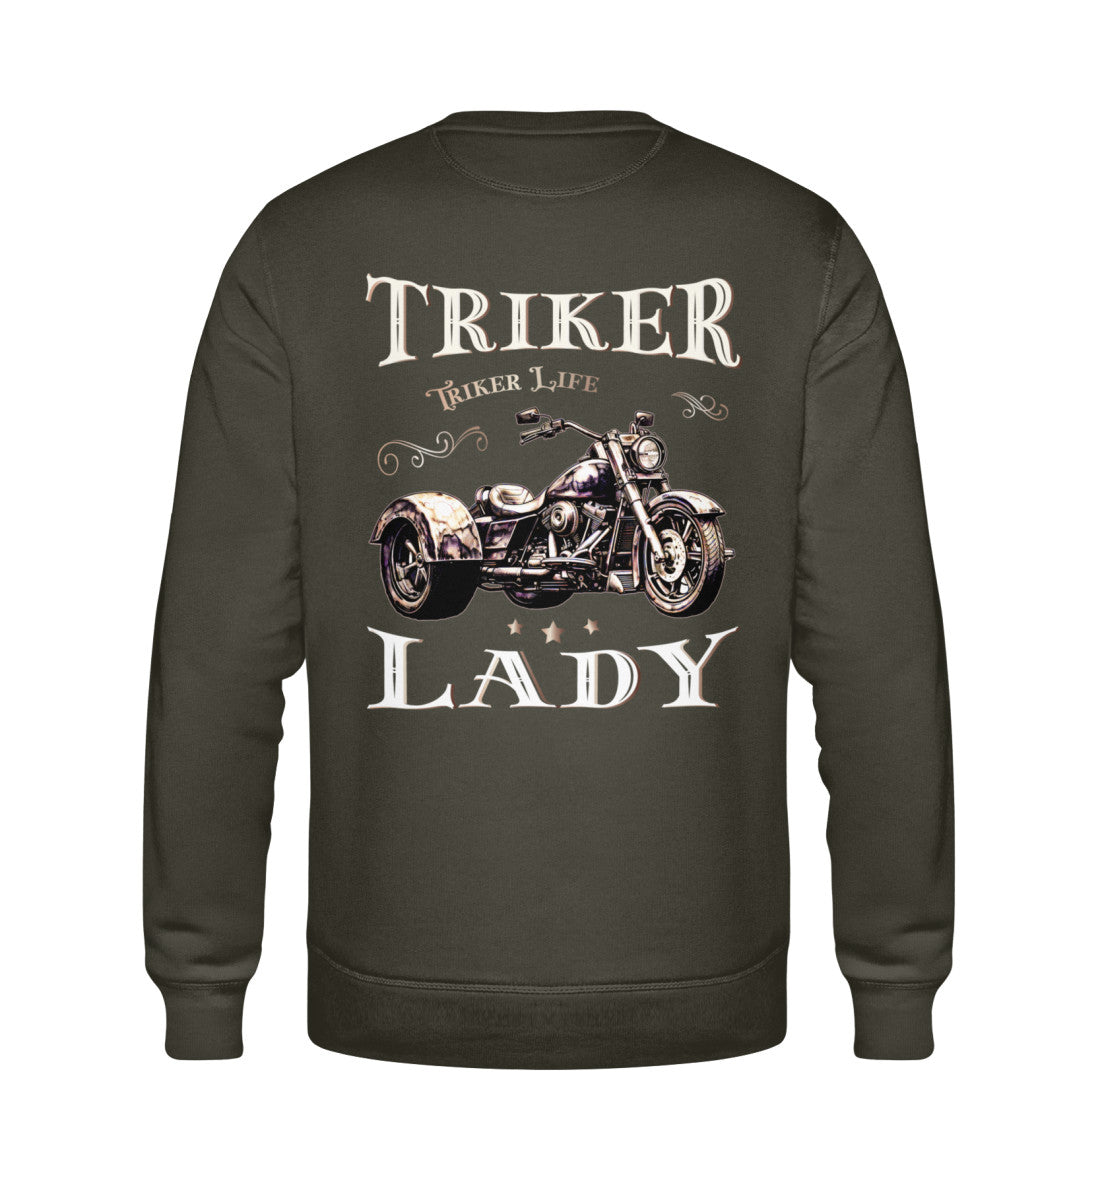 Ein Sweatshirt für Trike Fahrerinnen von Wingbikers mit dem Aufdruck, Triker Lady - Triker Life, im vintage Stil, als Back Print, in khaki grün.